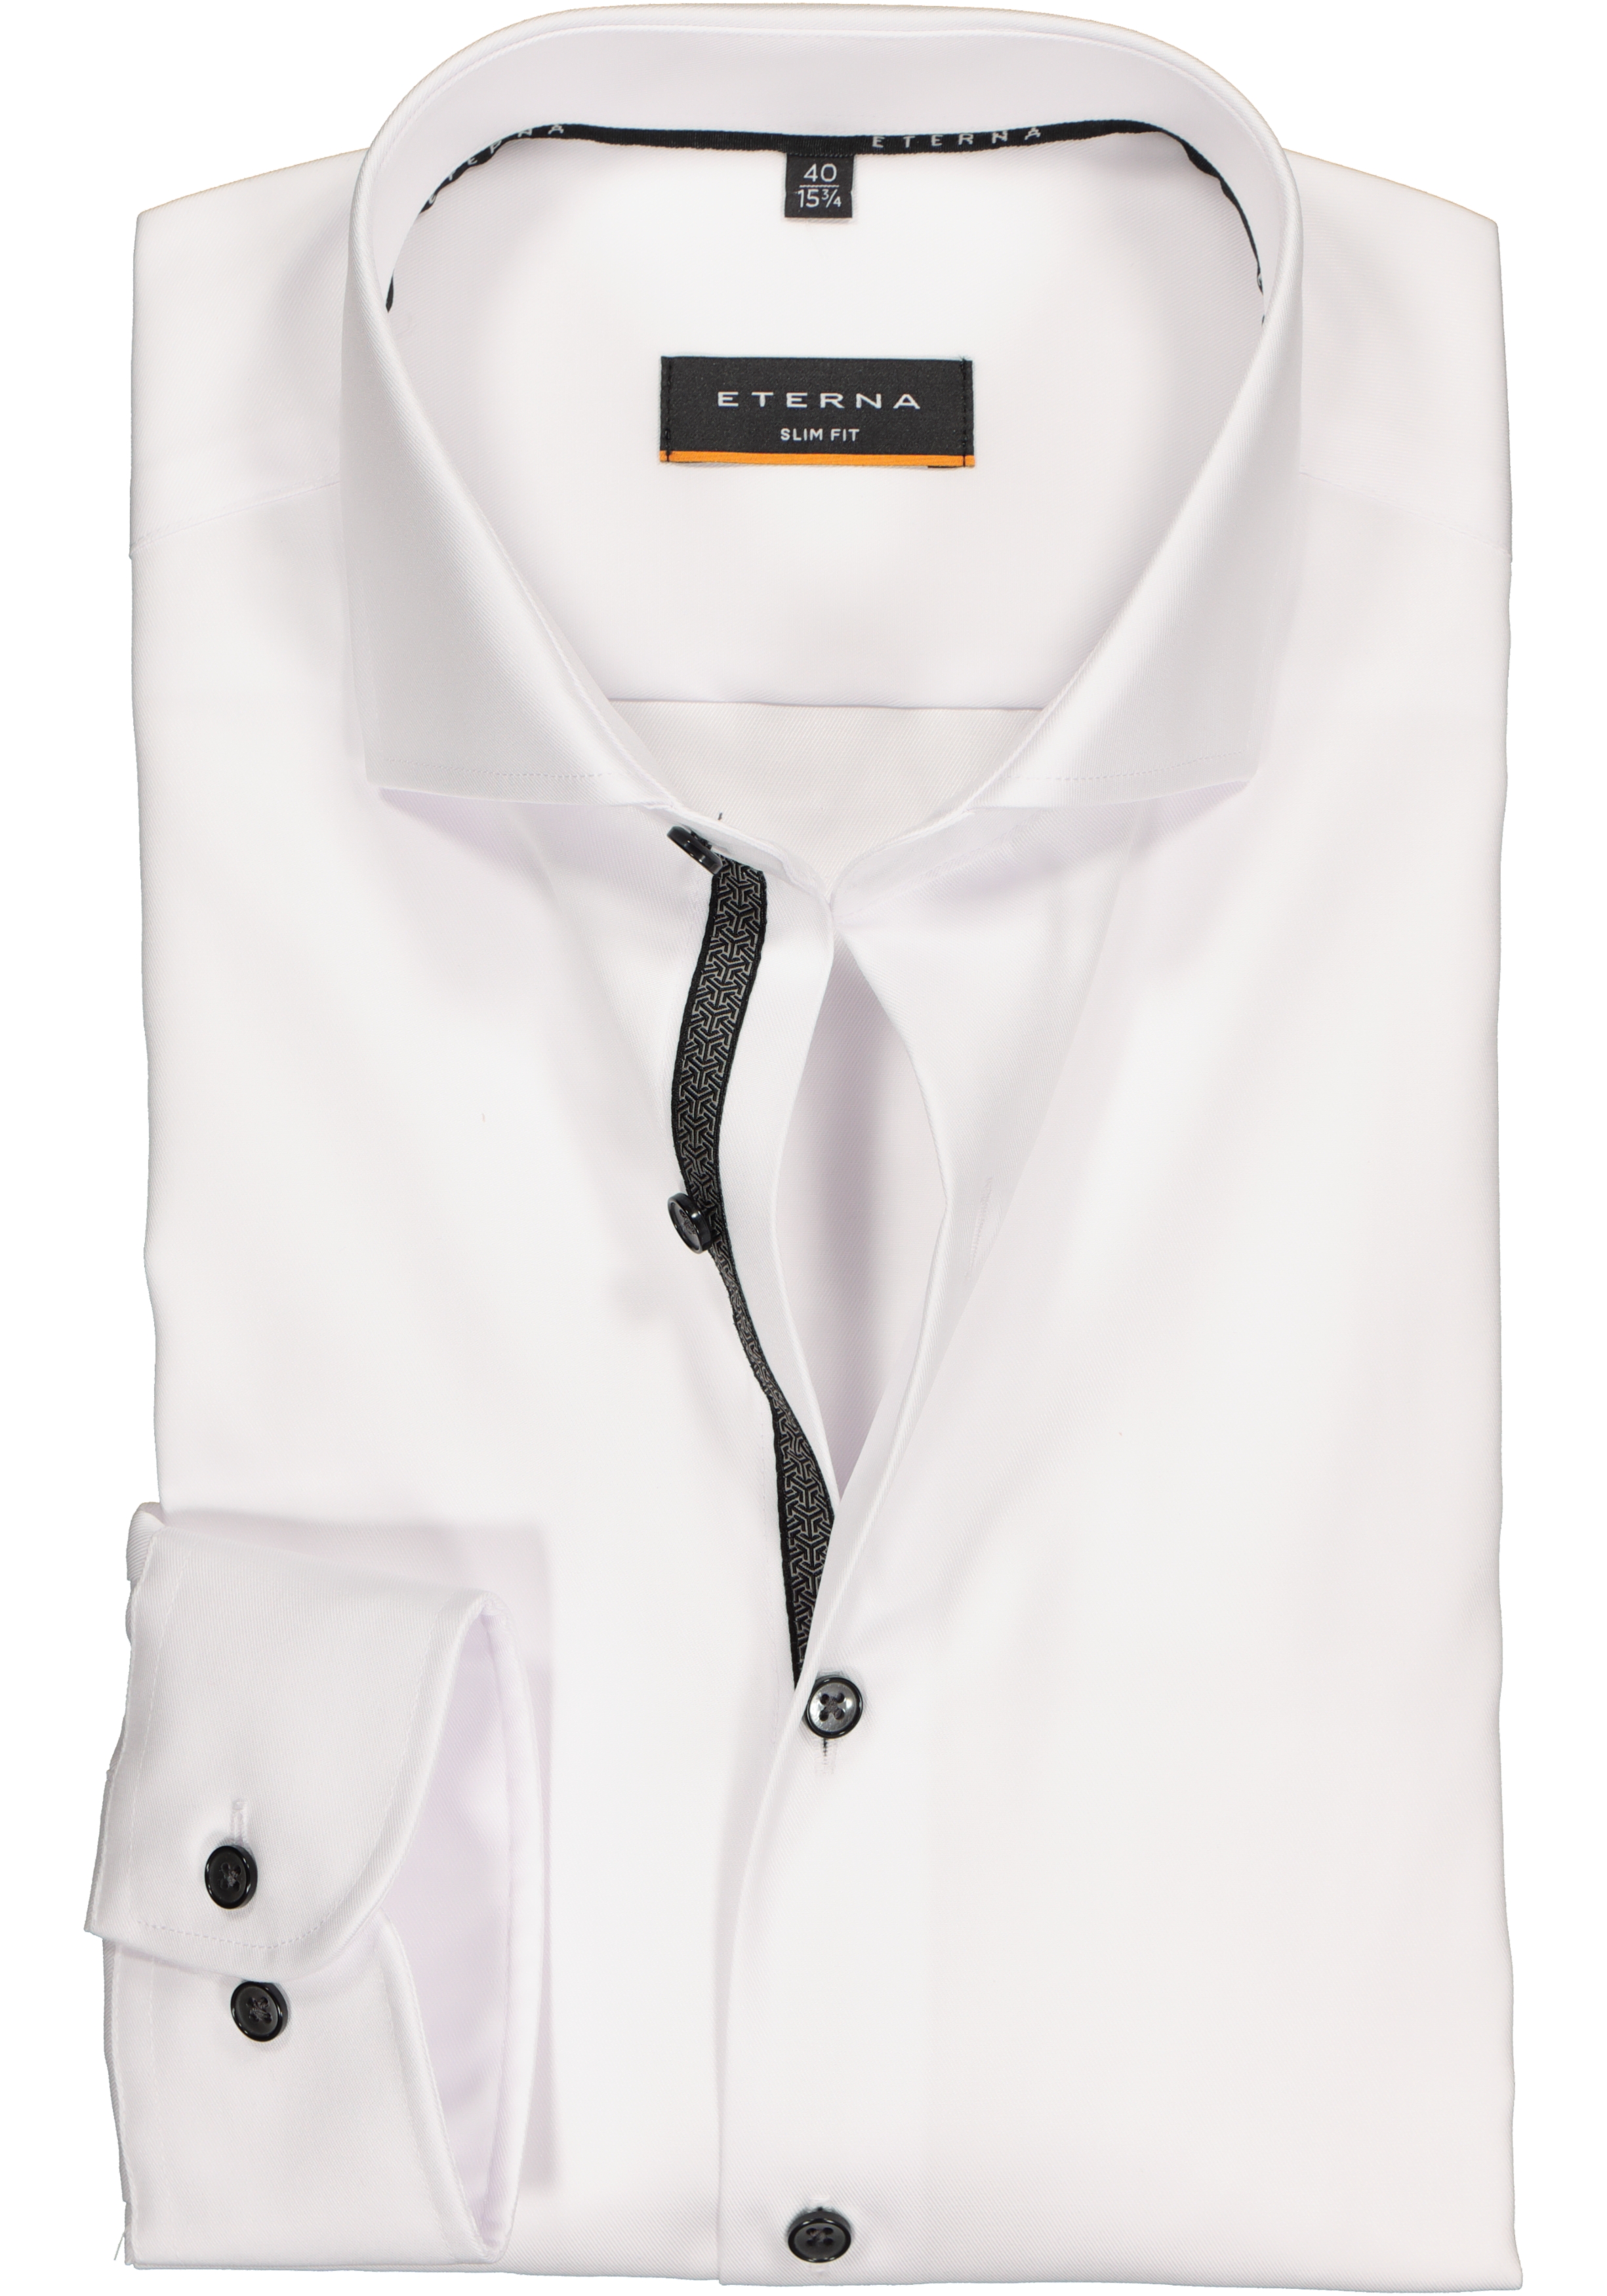 ETERNA slim fit overhemd, niet doorschijnend twill, wit (zwart contrast)